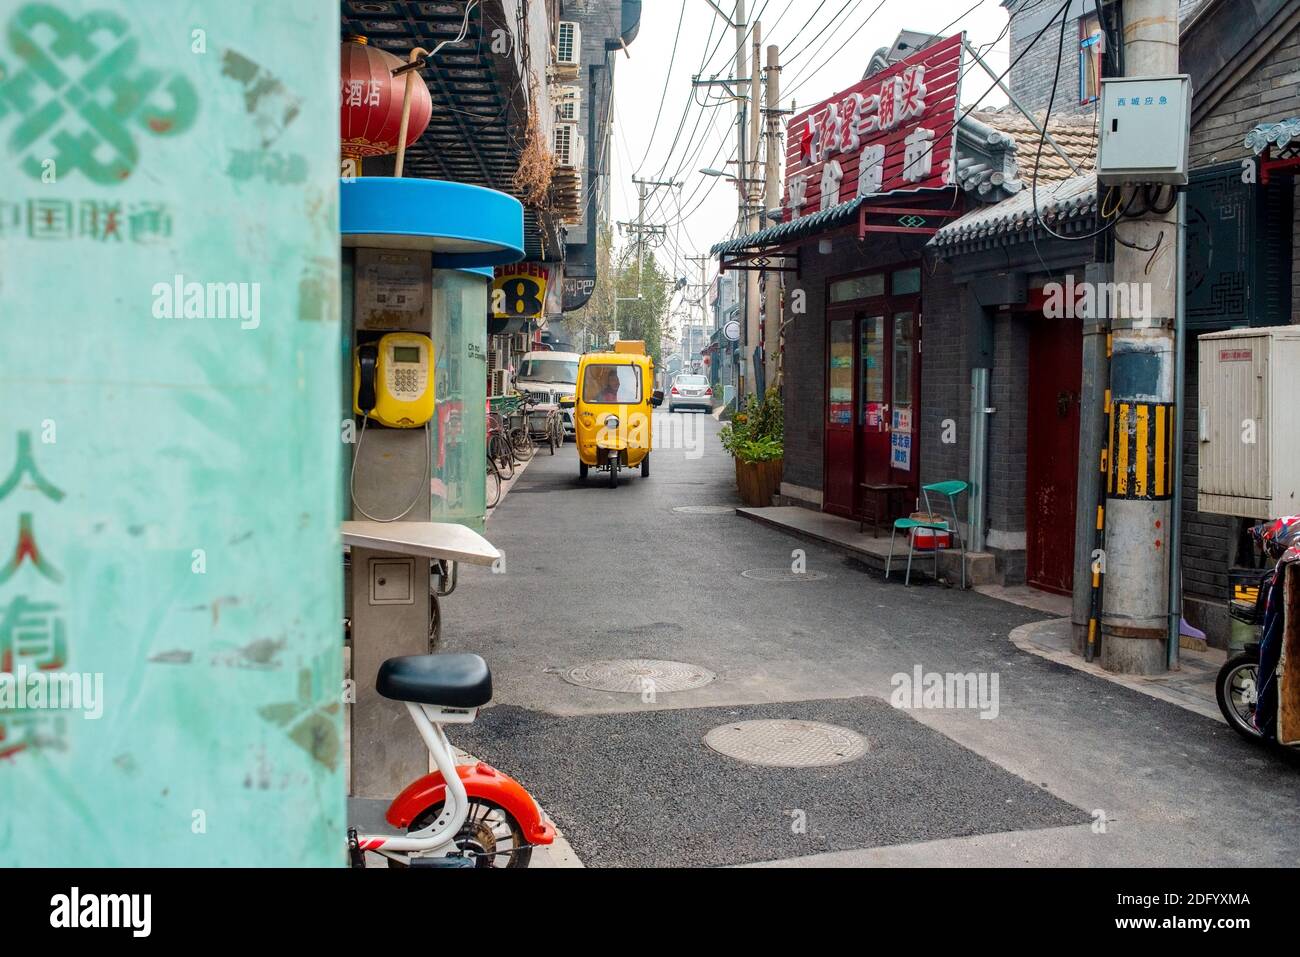 Gialle auto-risciò corre lungo una strada nello storico quartiere di Hutong. Hutong è un tipo di strada stretta o vicolo comunemente associato con Pechino. Foto Stock